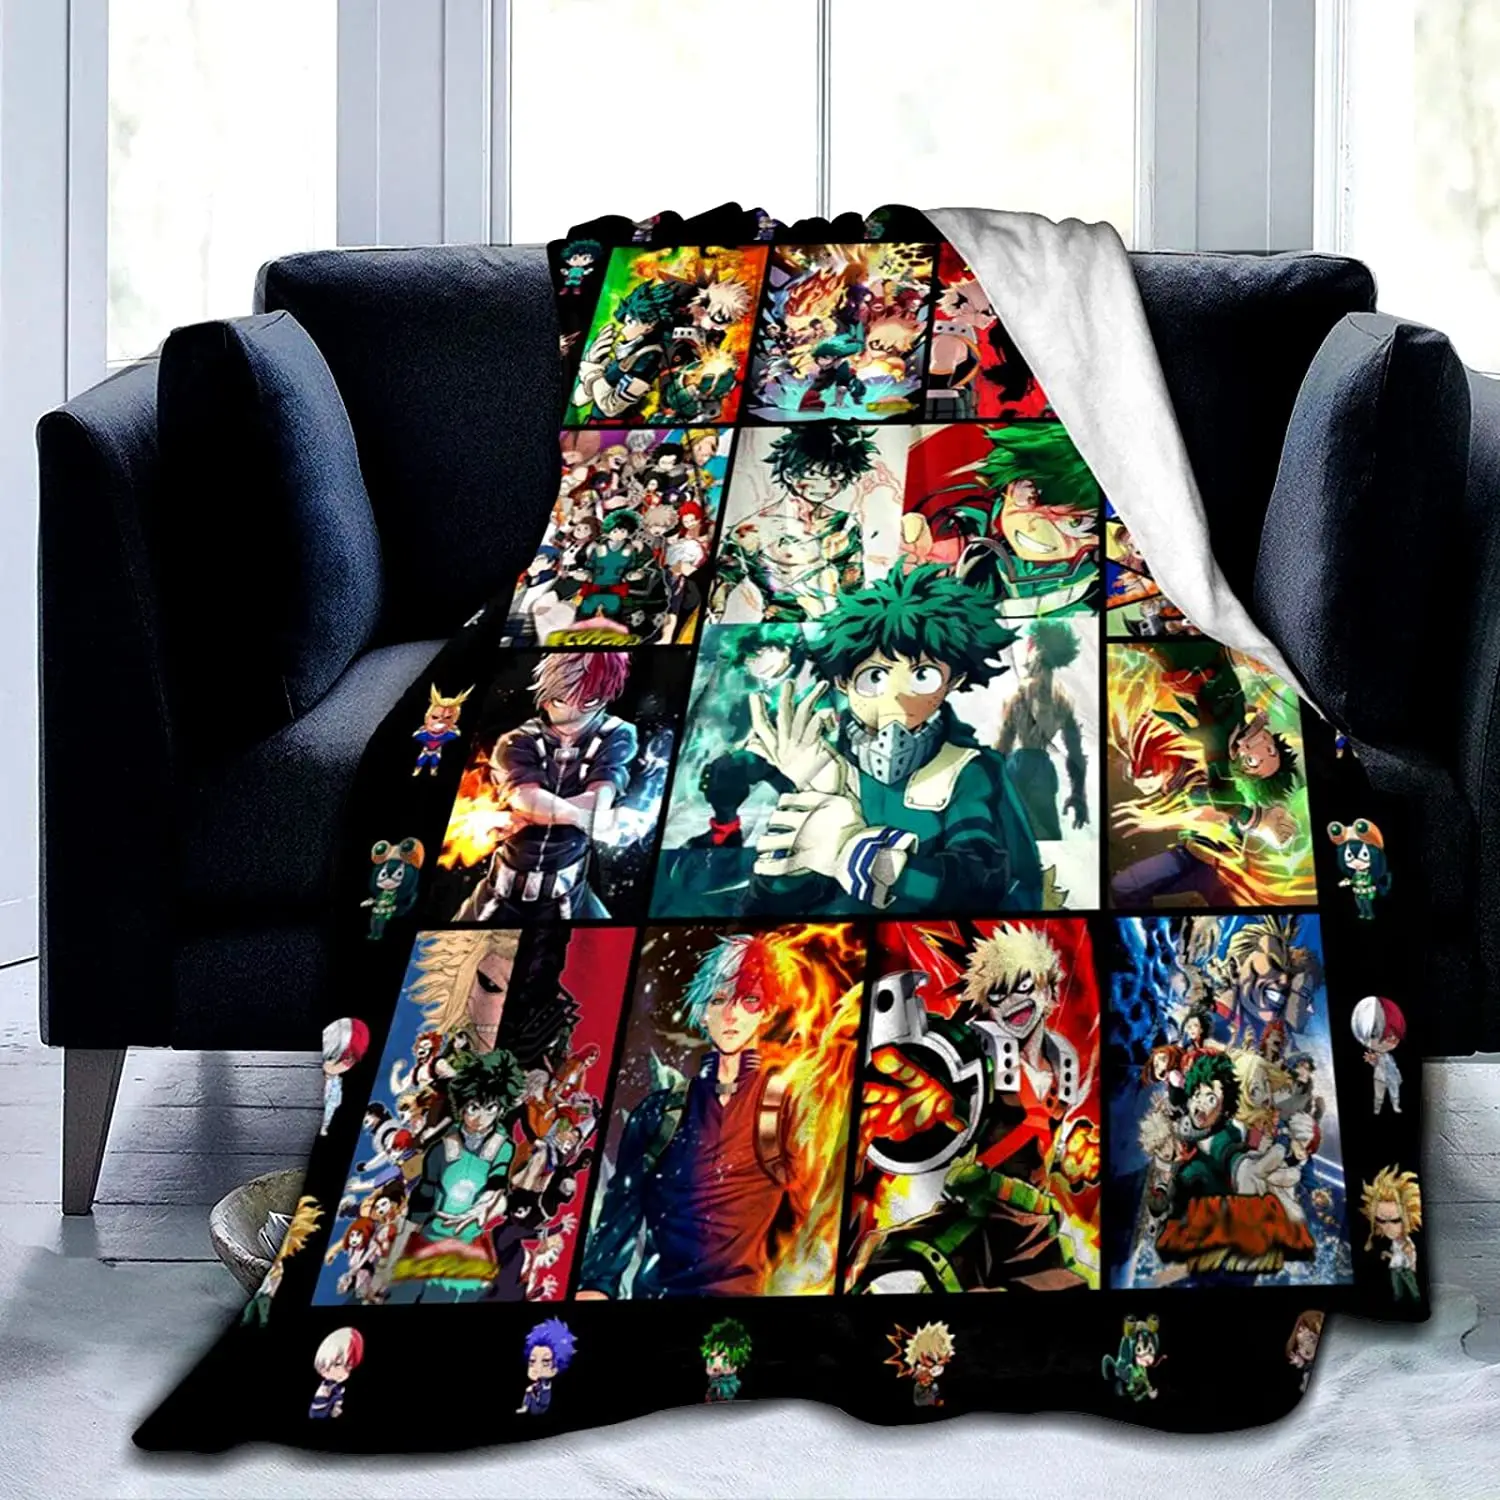 

Супермягкое фланелевое одеяло в стиле аниме, мультяшный плед, легкое покрывало для дивана, кресла, для спальни, взрослых, детей, мальчиков и ...